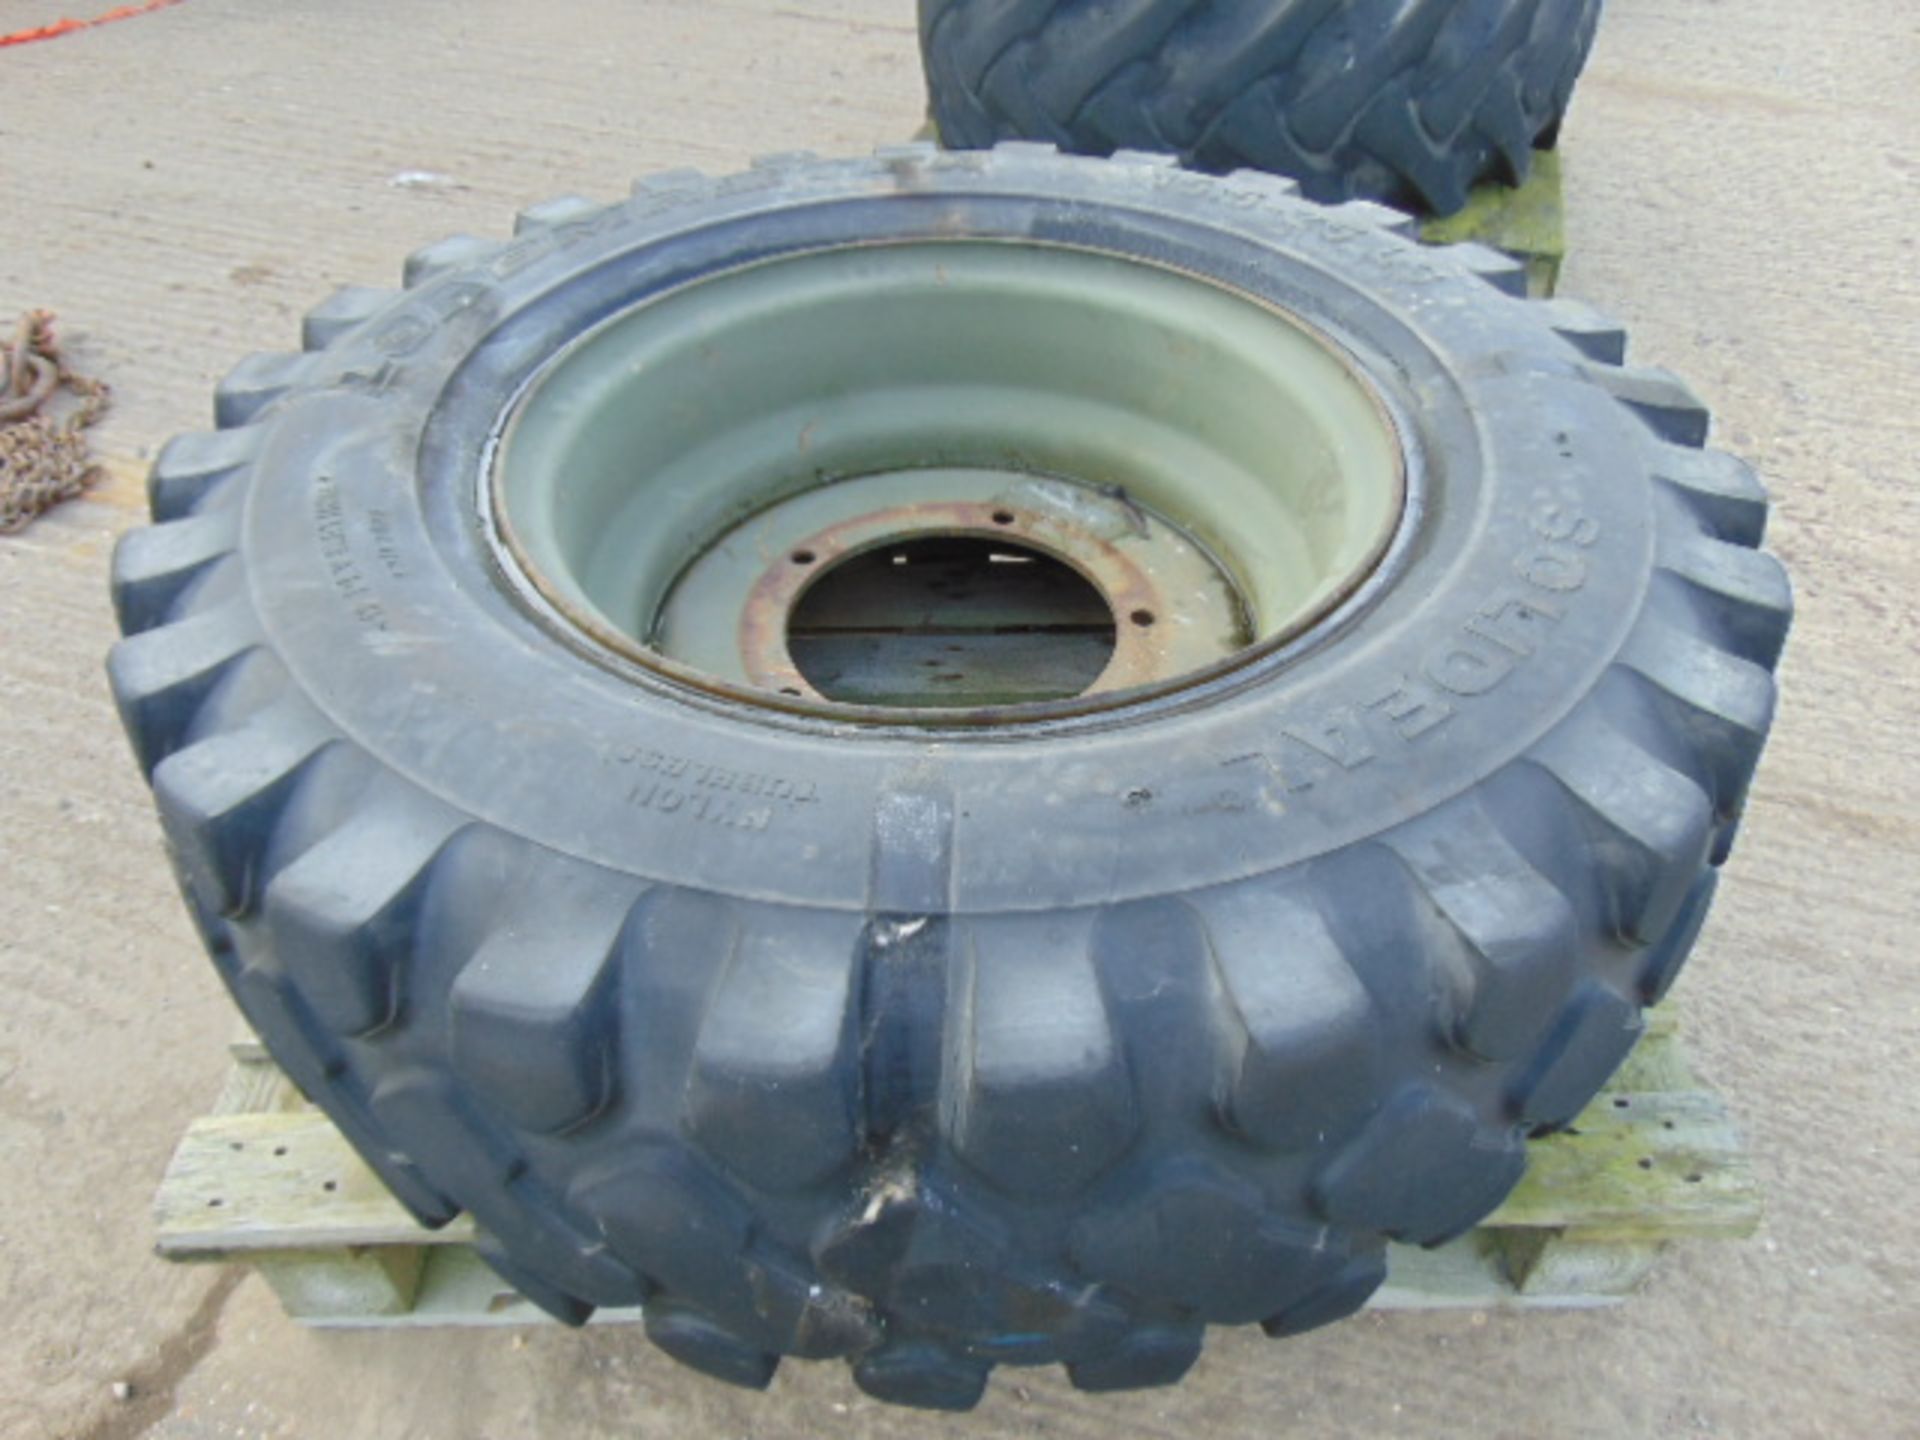 1 x Solideal Load Master 15.5-23 L3 Tyre C/W 5 Stud Rim